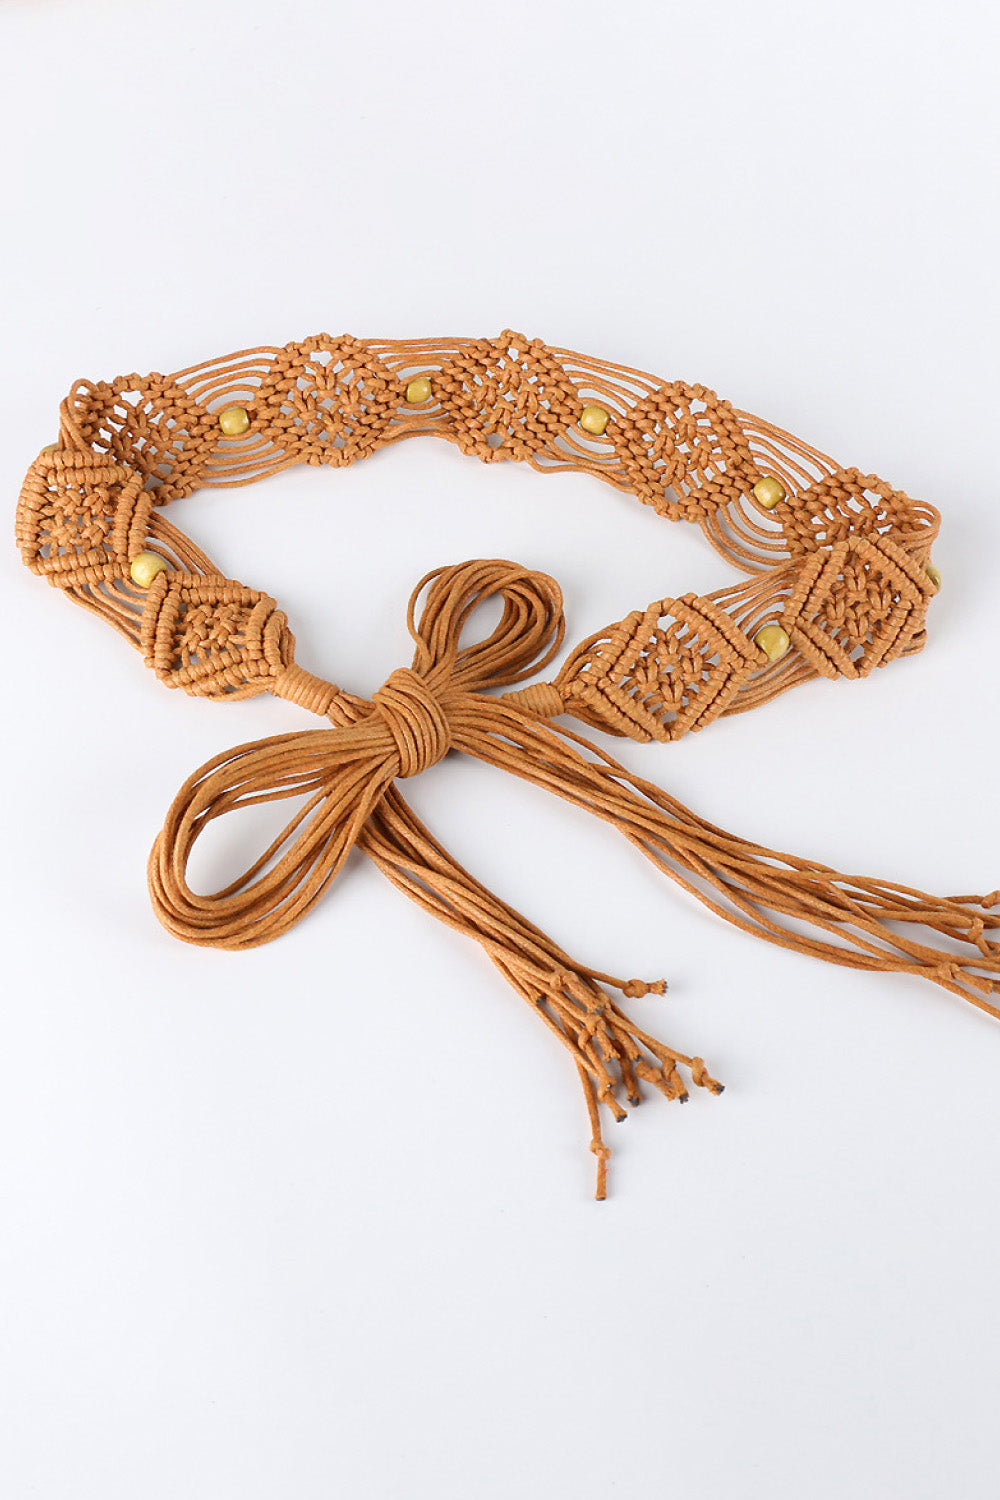 Boho Braid Belt with Fringes & Wood Beads